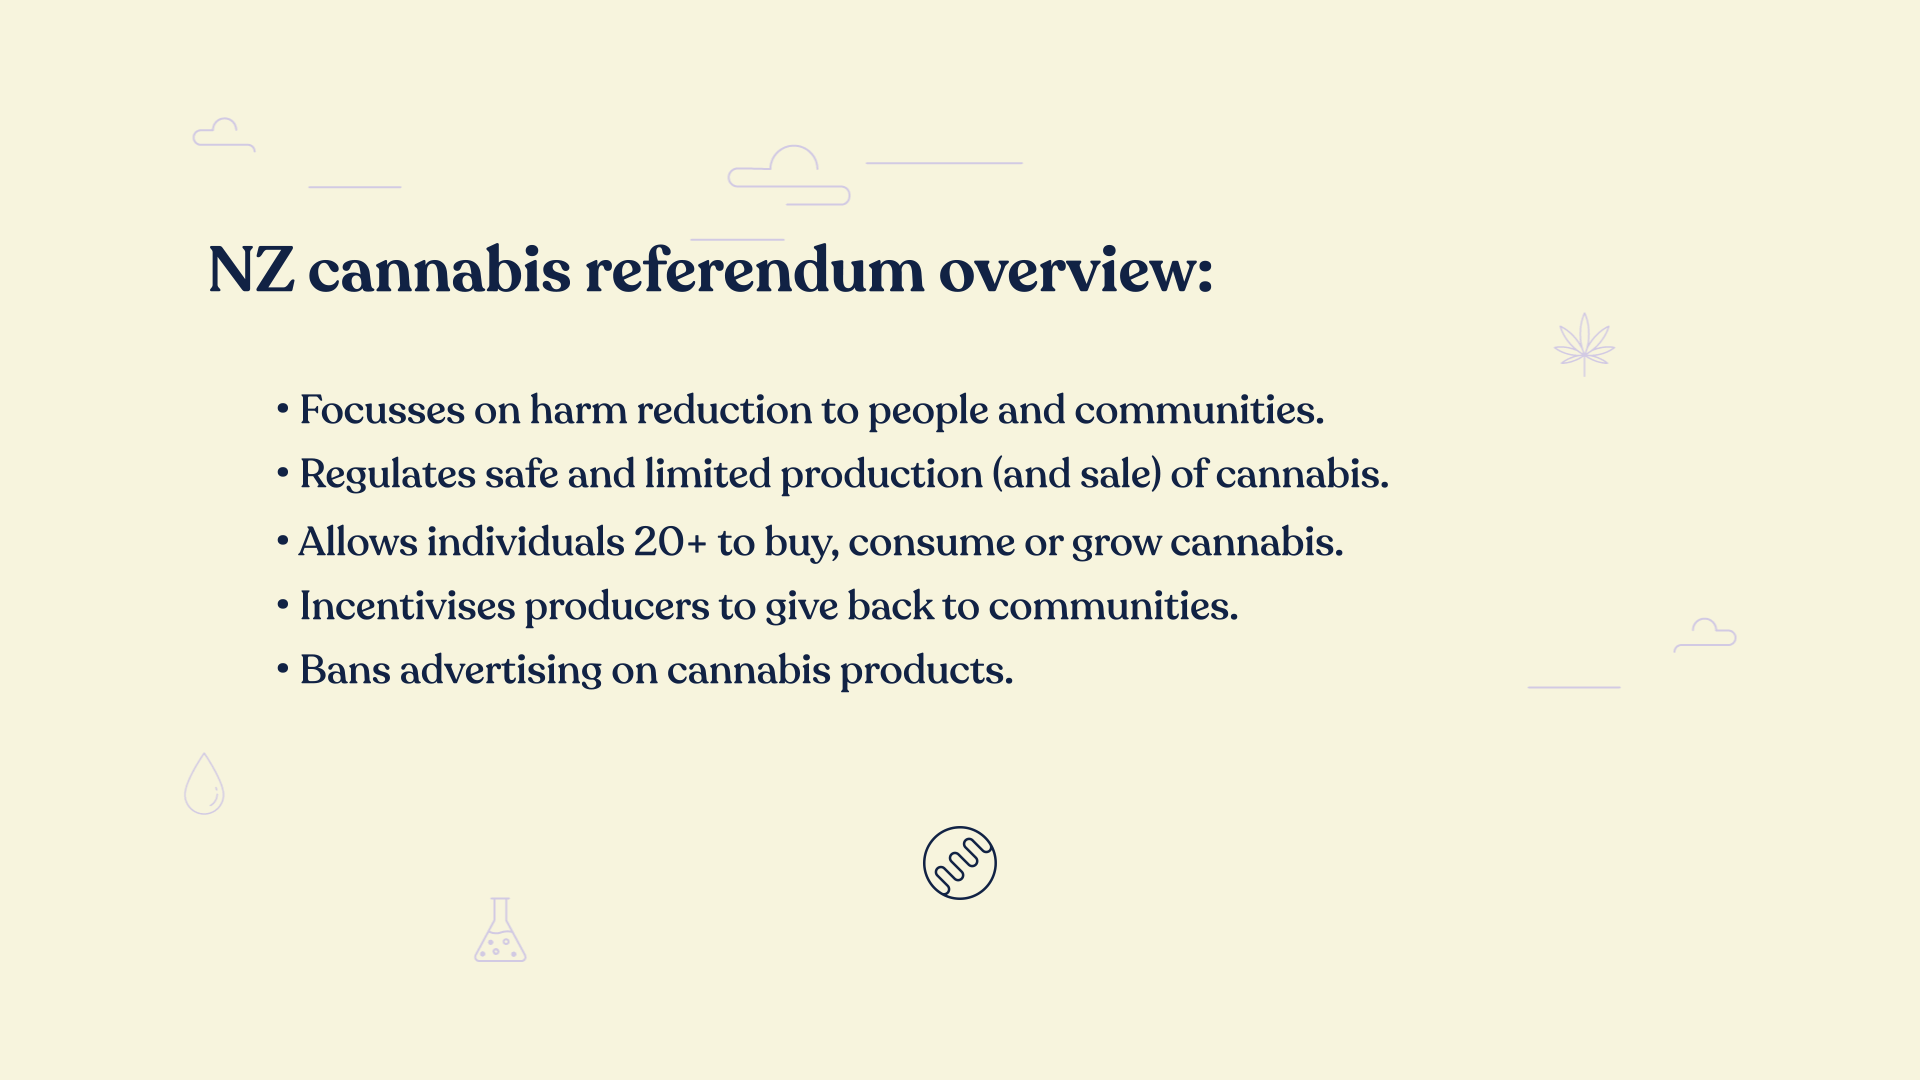 nz cannabis referendum overview